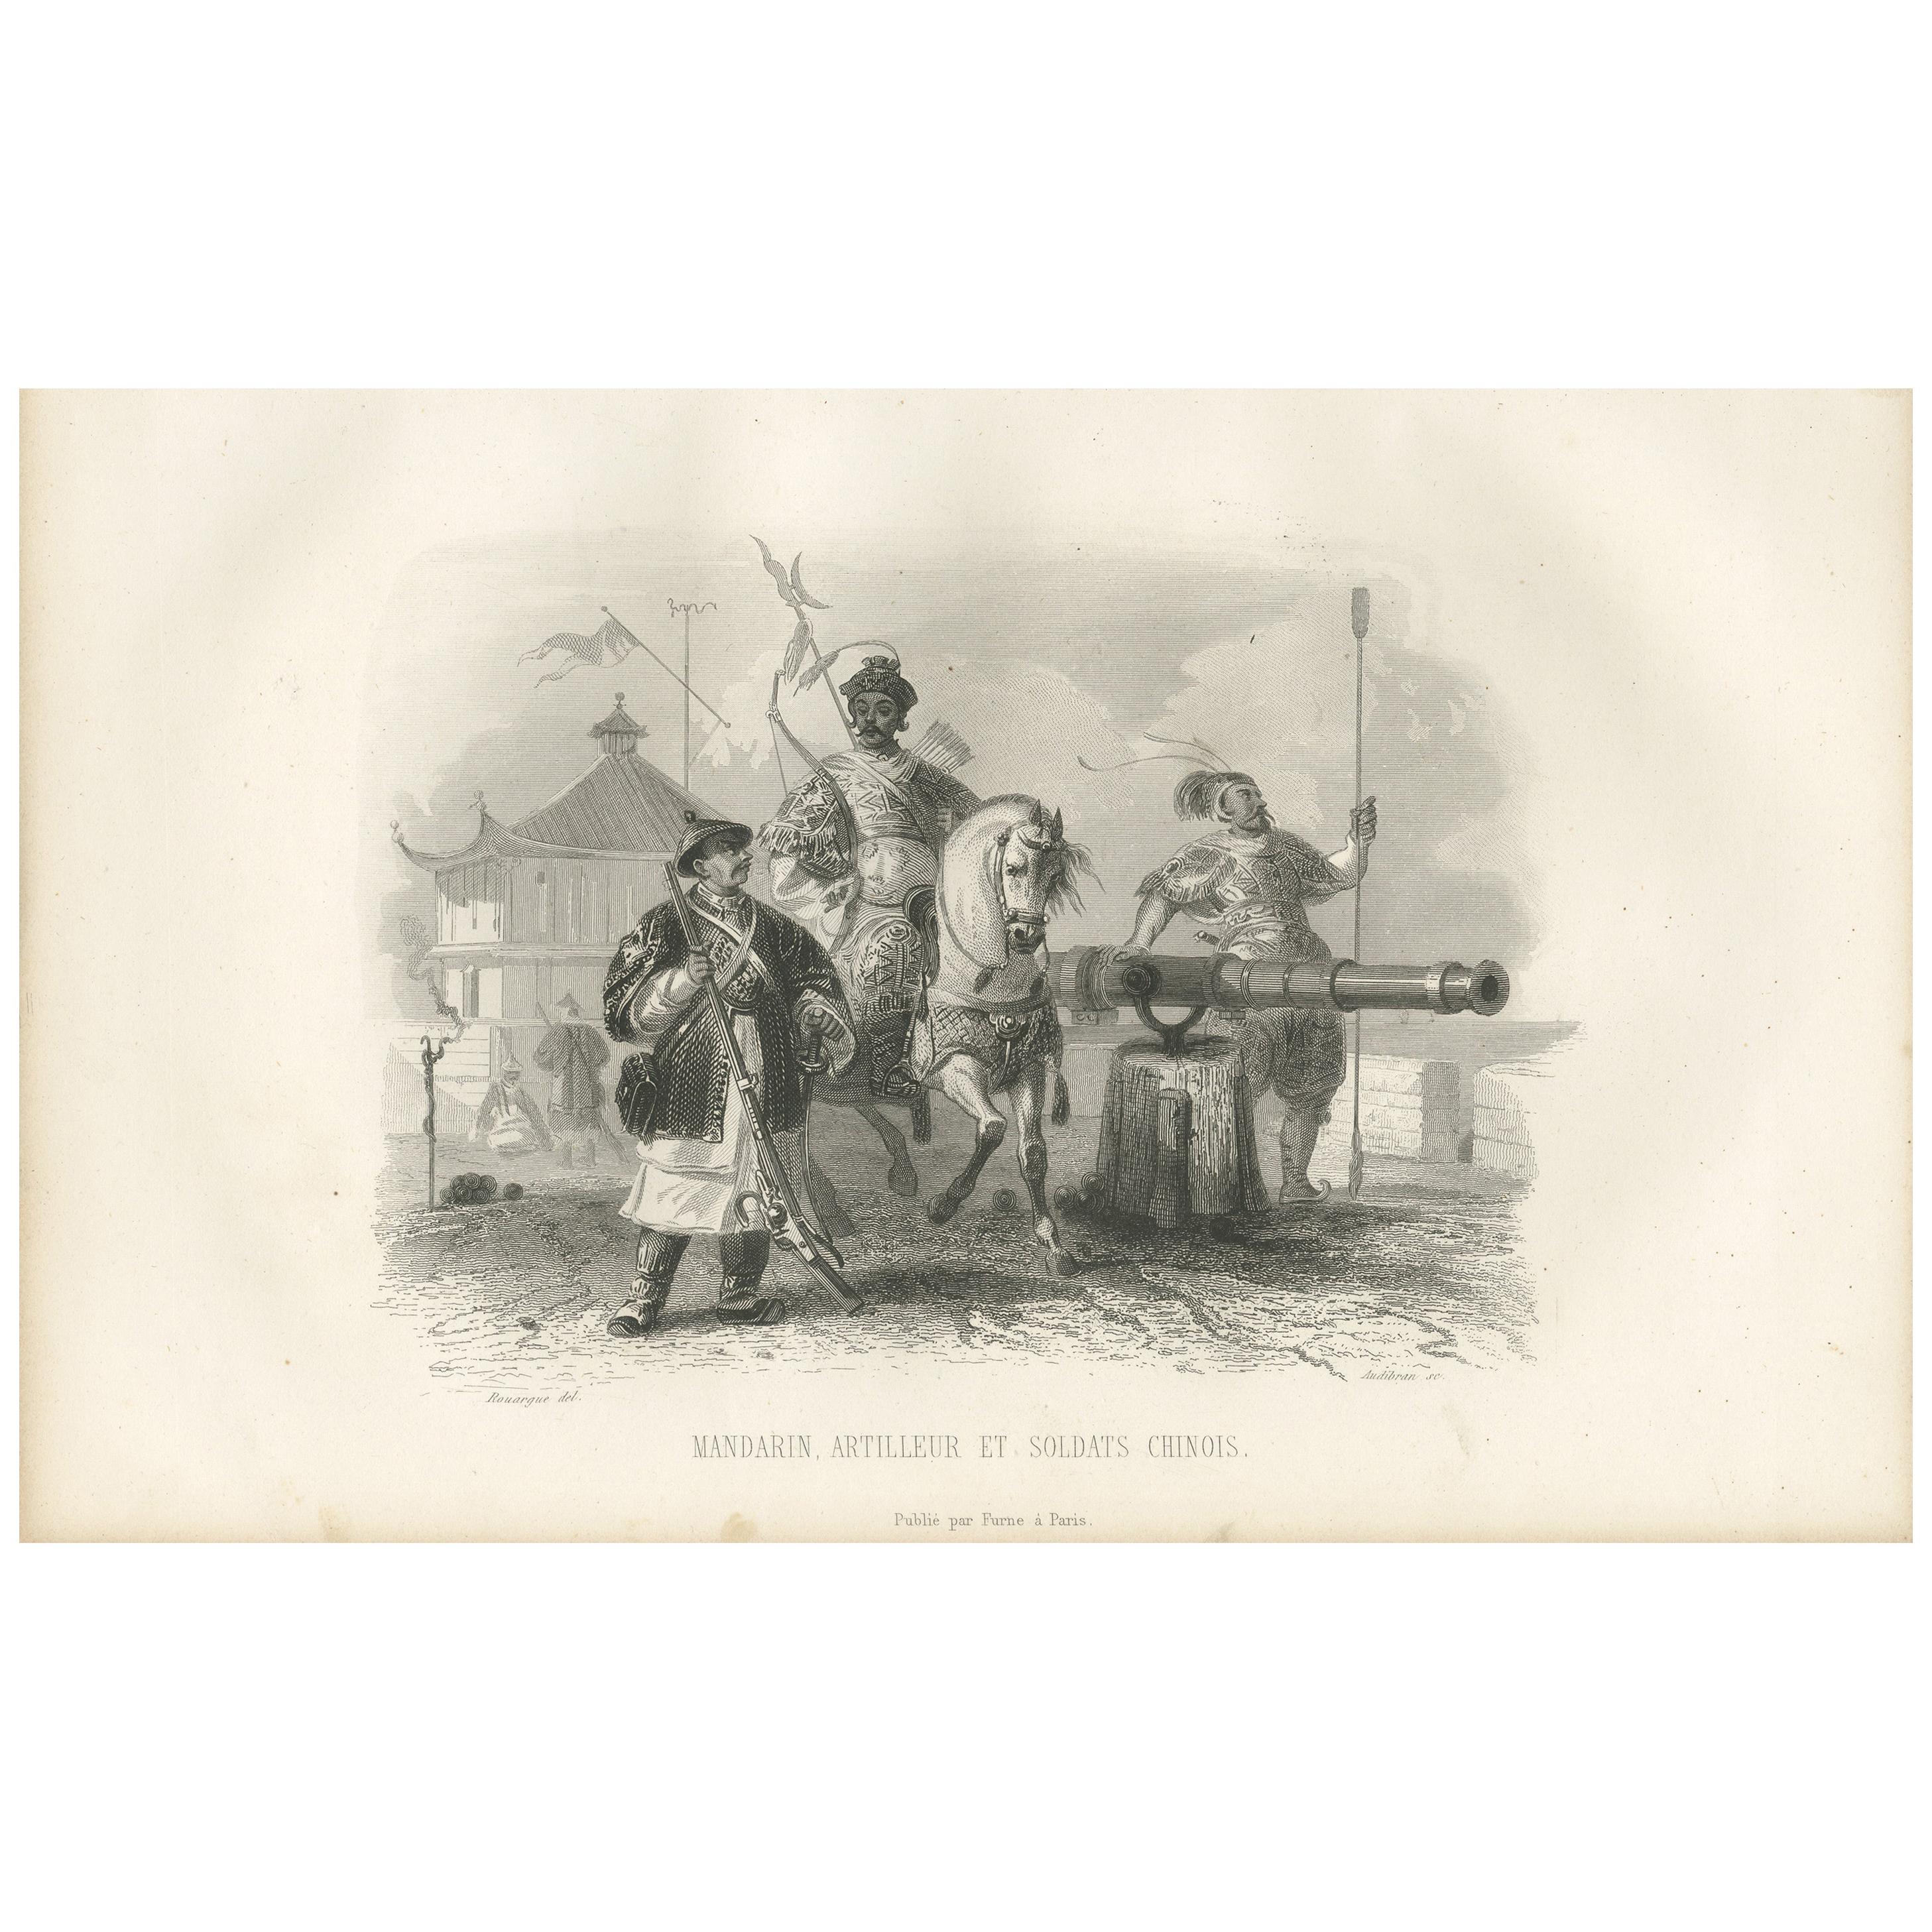 Impression ancienne de soldats chinois par D'Urville (1853)